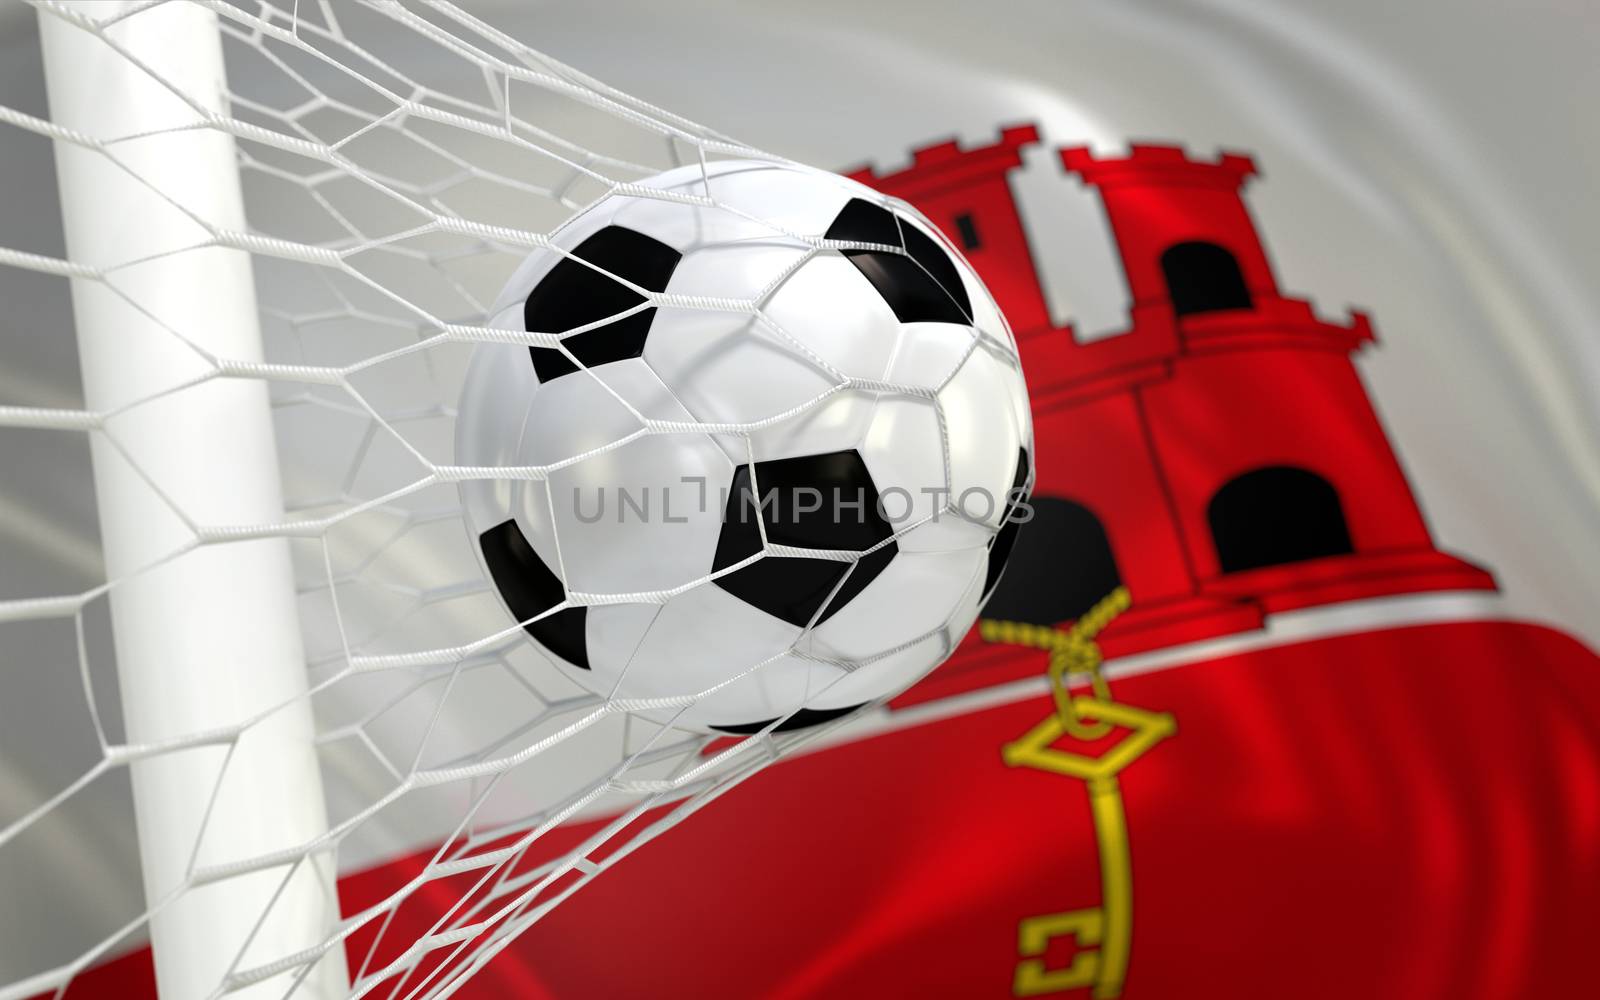 Gibraltar flag and soccer ball, football in goal net